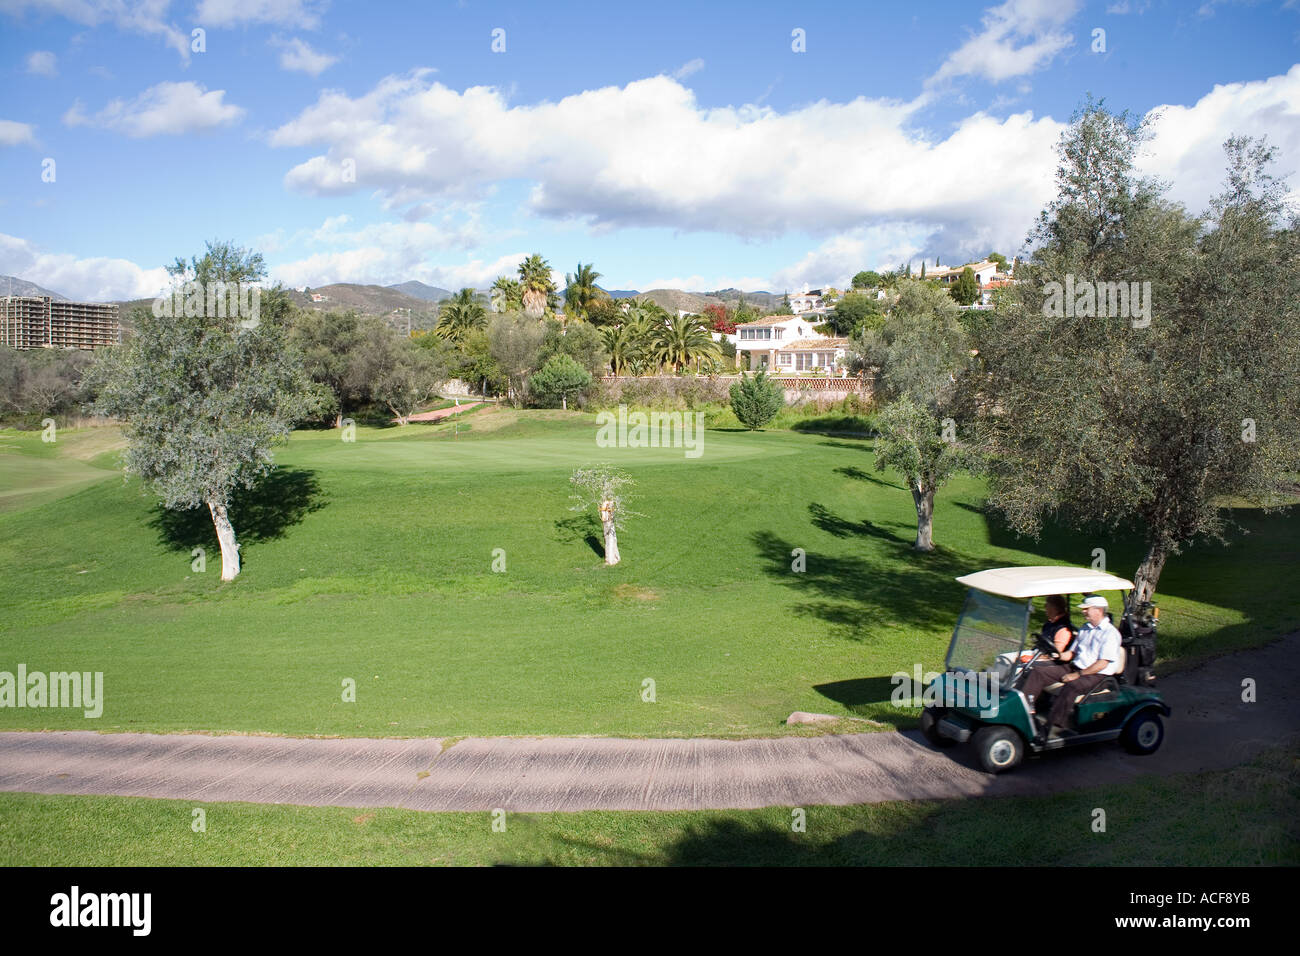 SpainGolf près de cours de Golf Marbella espagne golf golfeur golf liens sport loisirs exercice fairway vert Banque D'Images